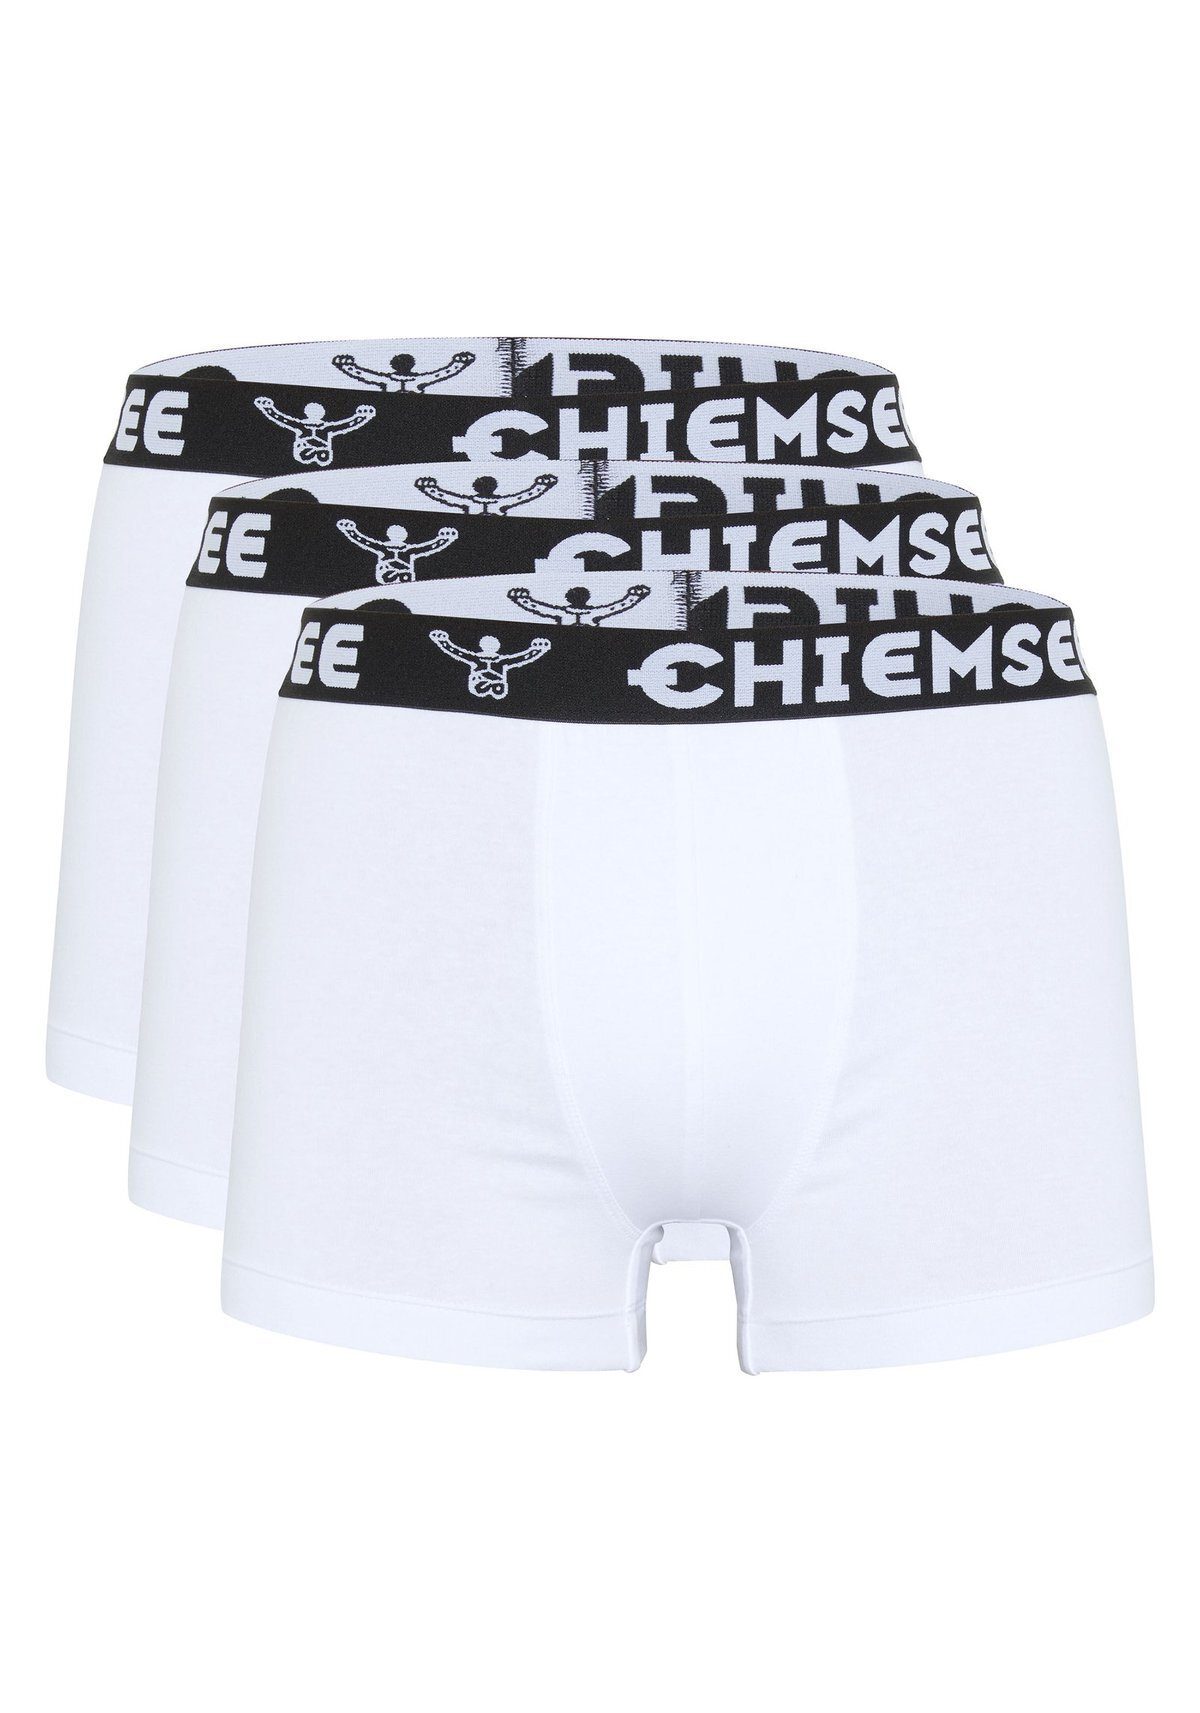 Chiemsee Boxer Boxershorts, Weiß - 3er Shorts, Logobund Herren Pack